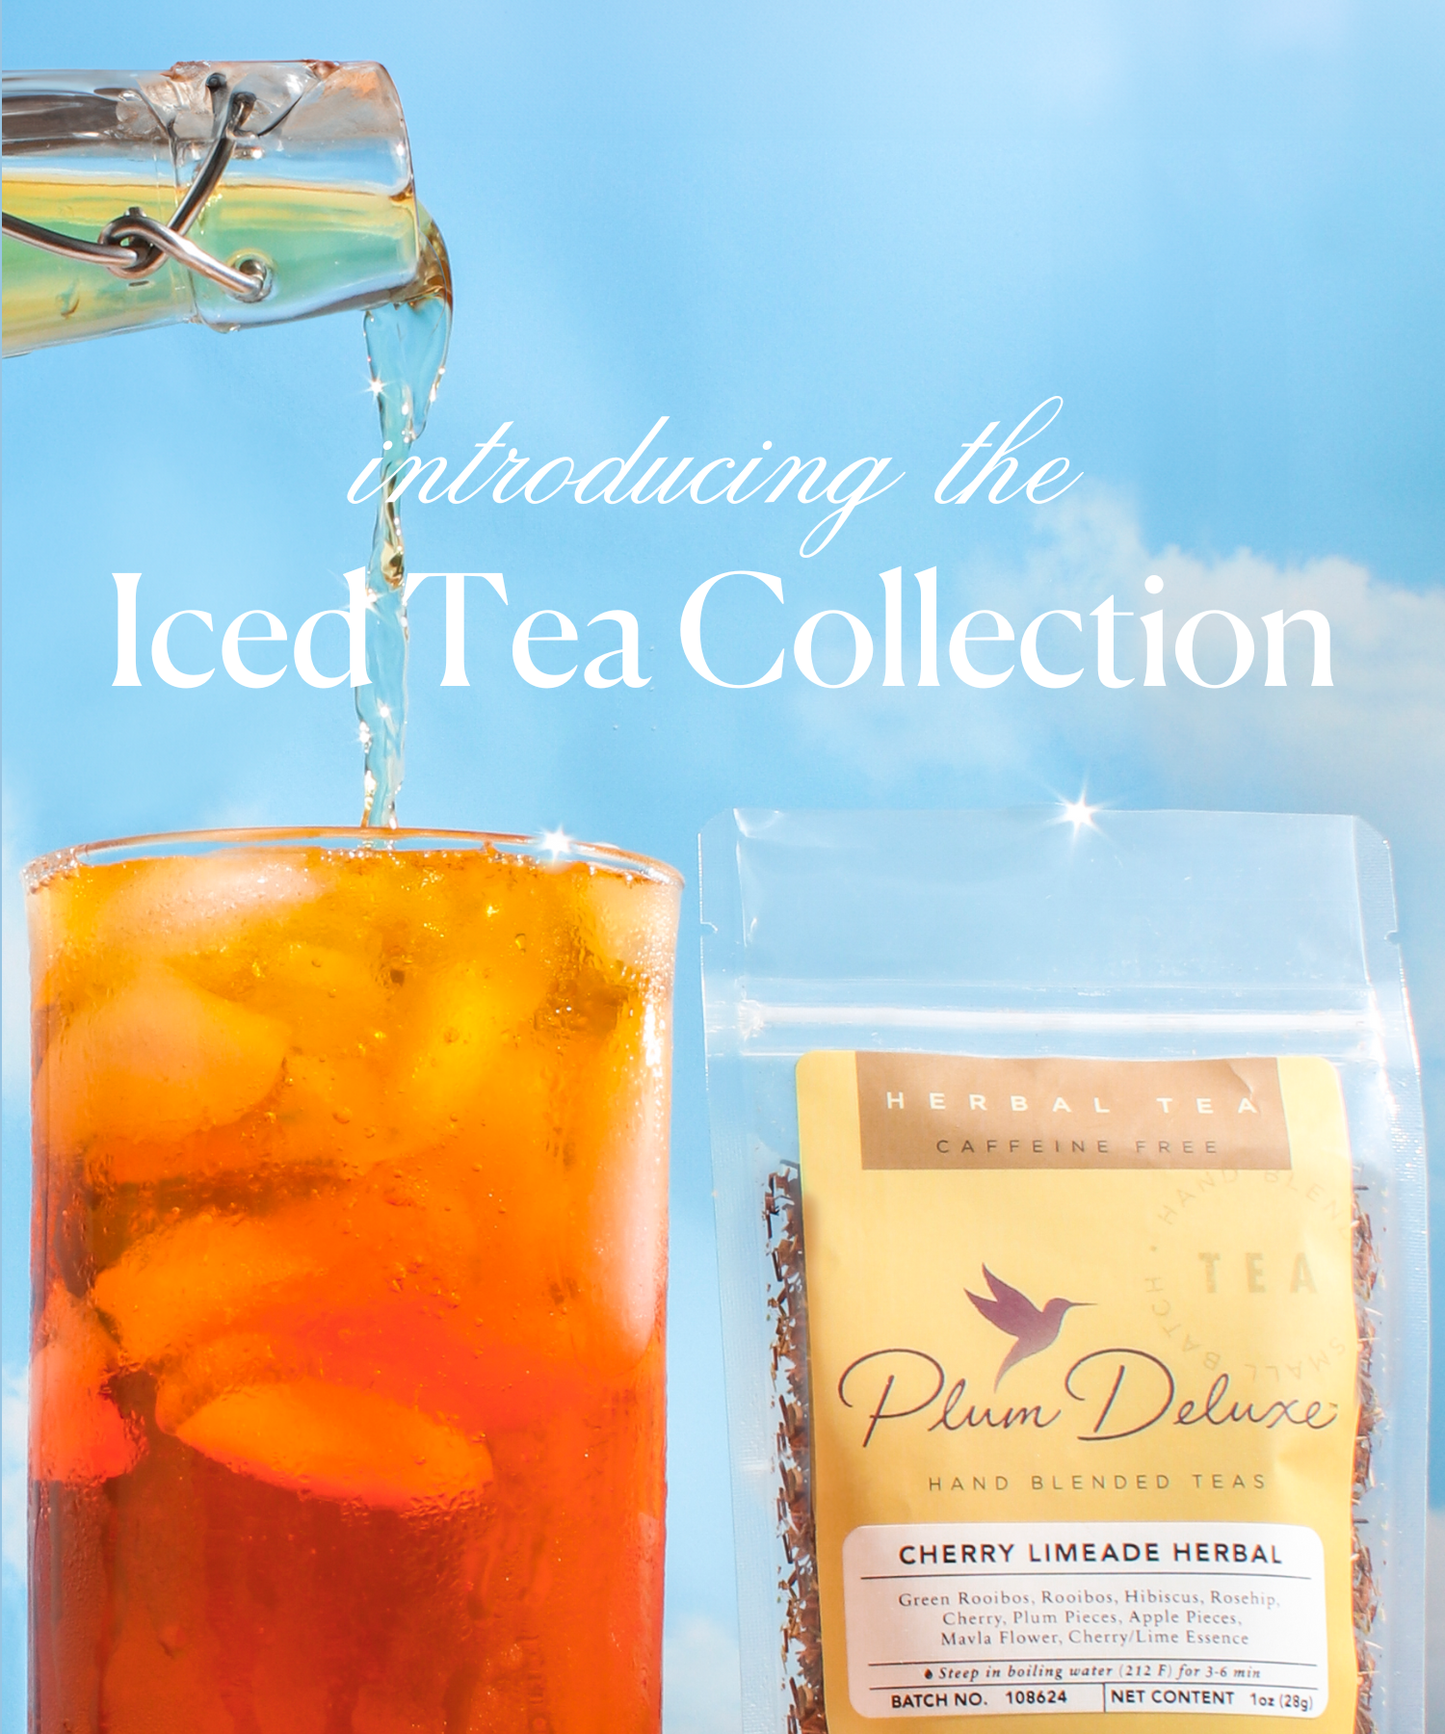 Cherry Limeade Herbal Tea - Summer Iced Tea Collection